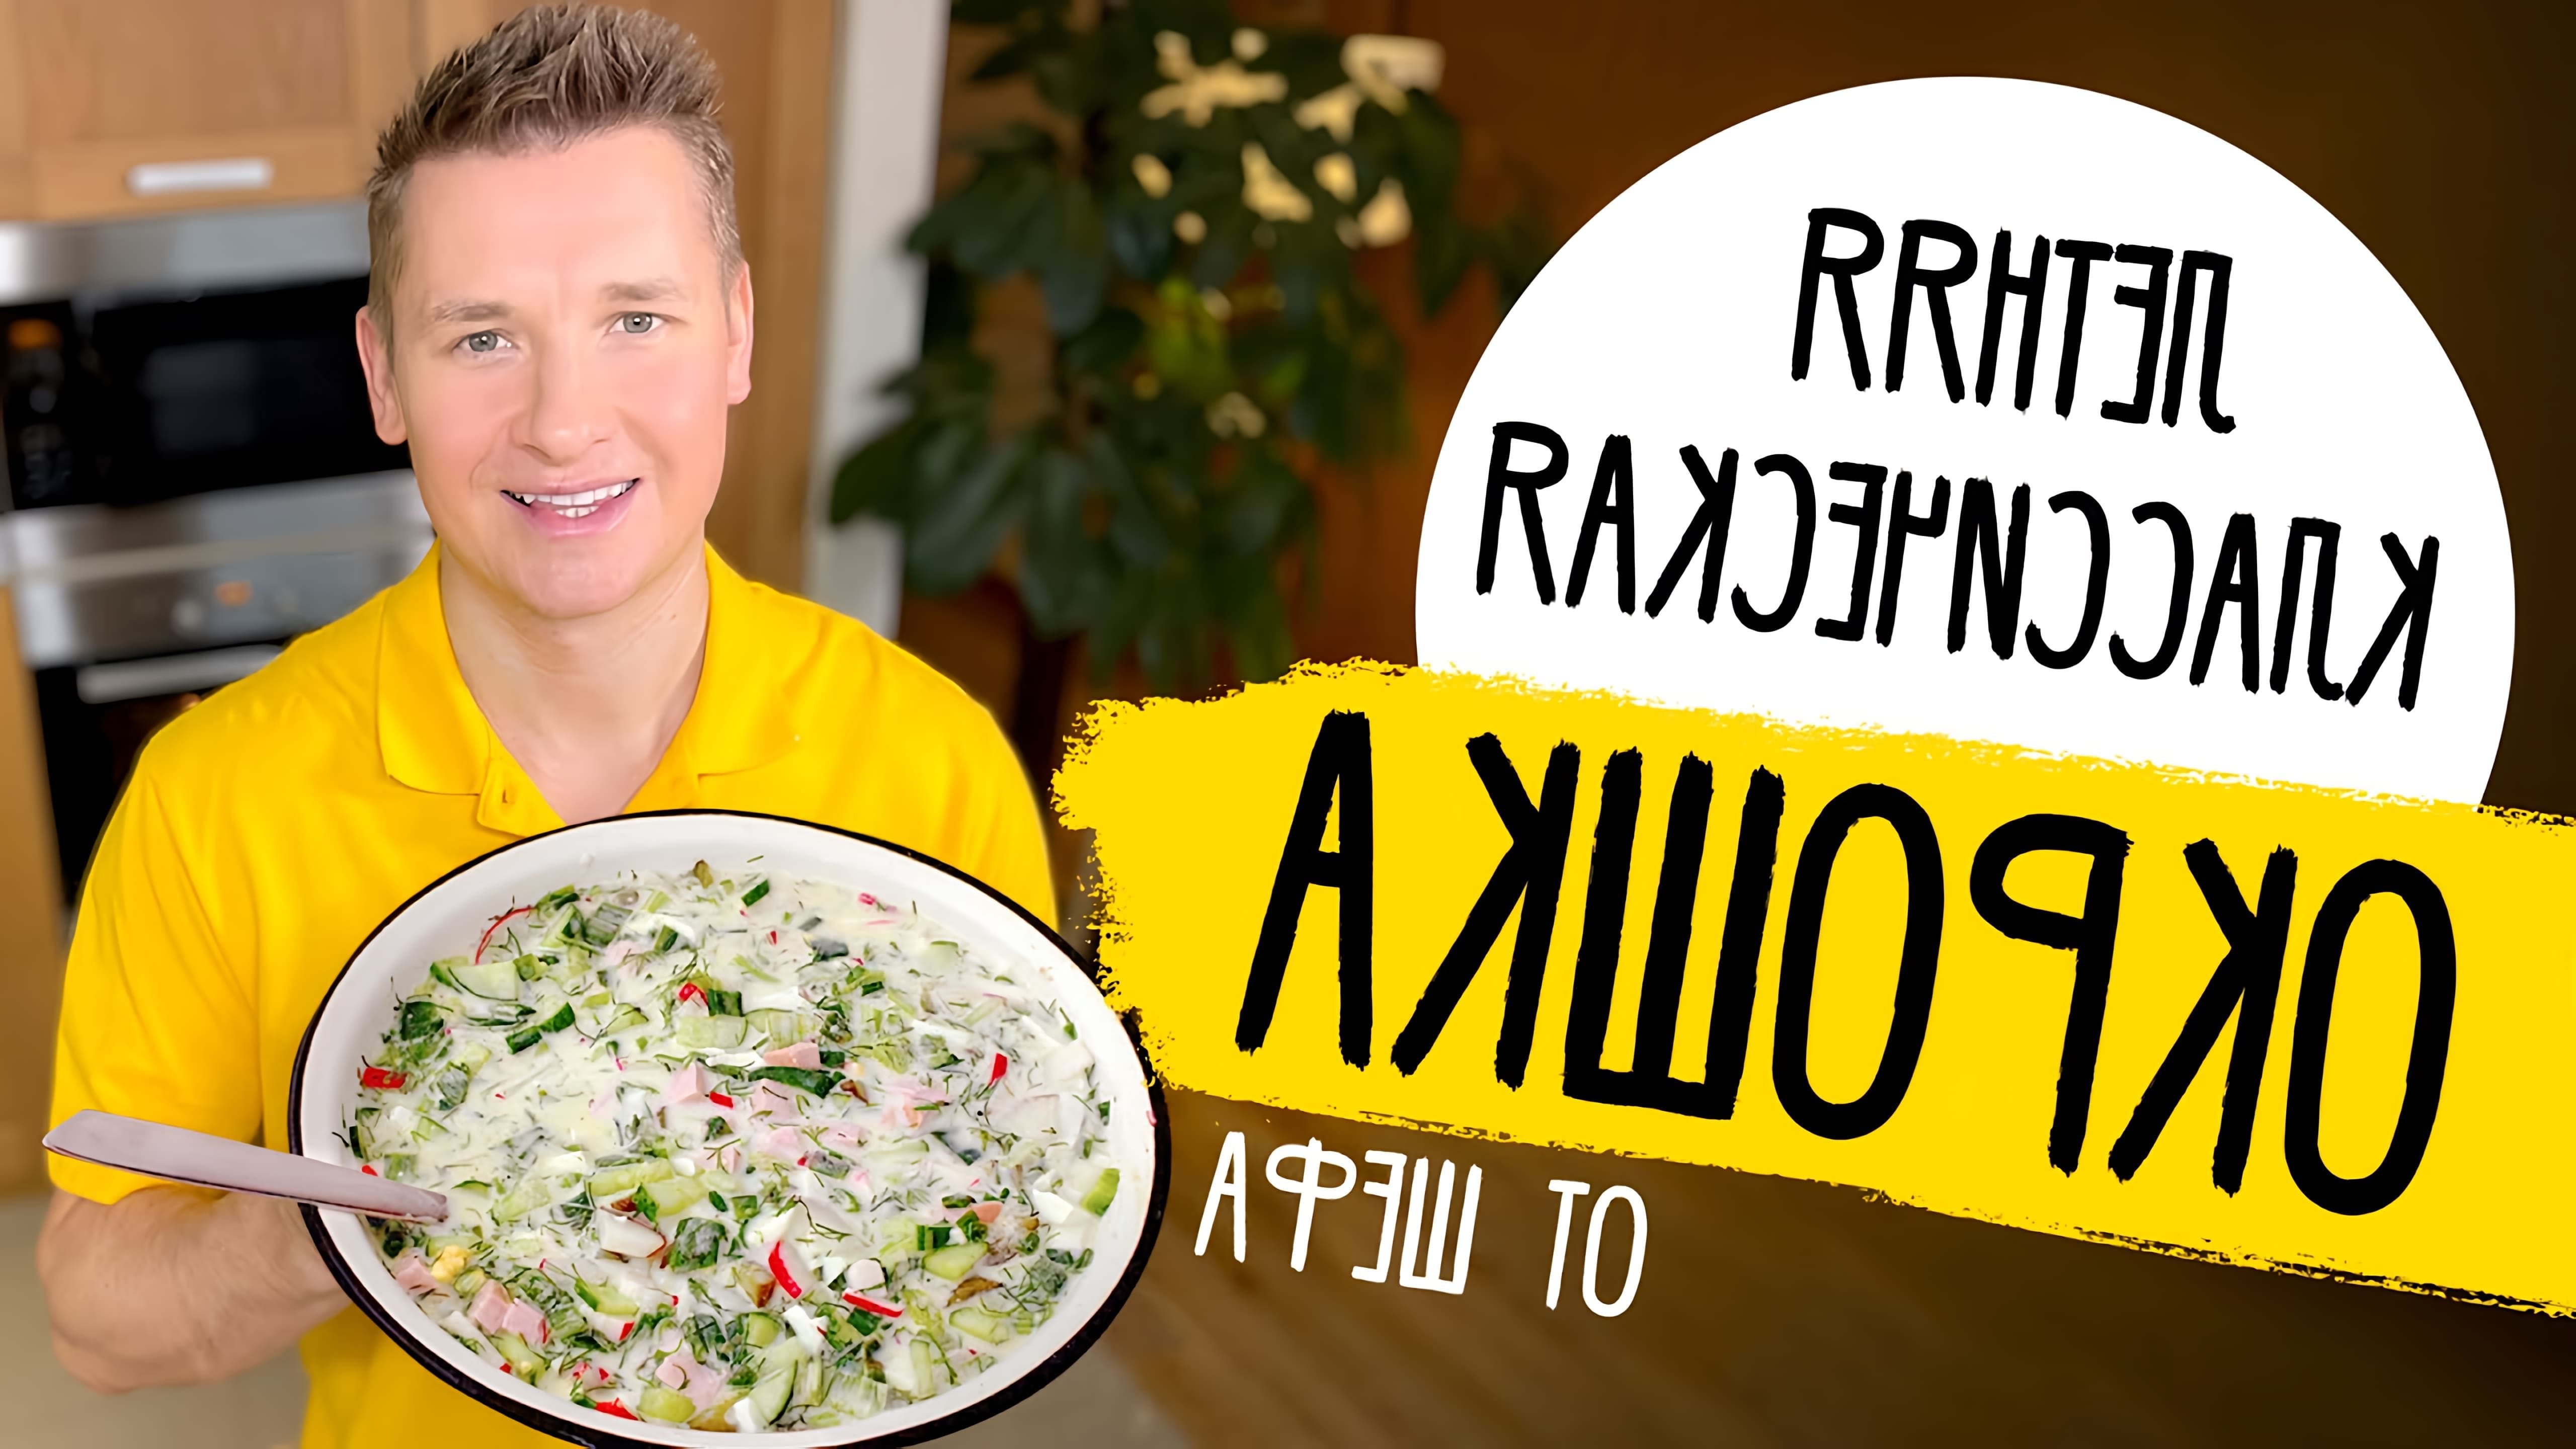 В этом видео Александр Белькович, известный шеф-повар, делится своим рецептом окрошки